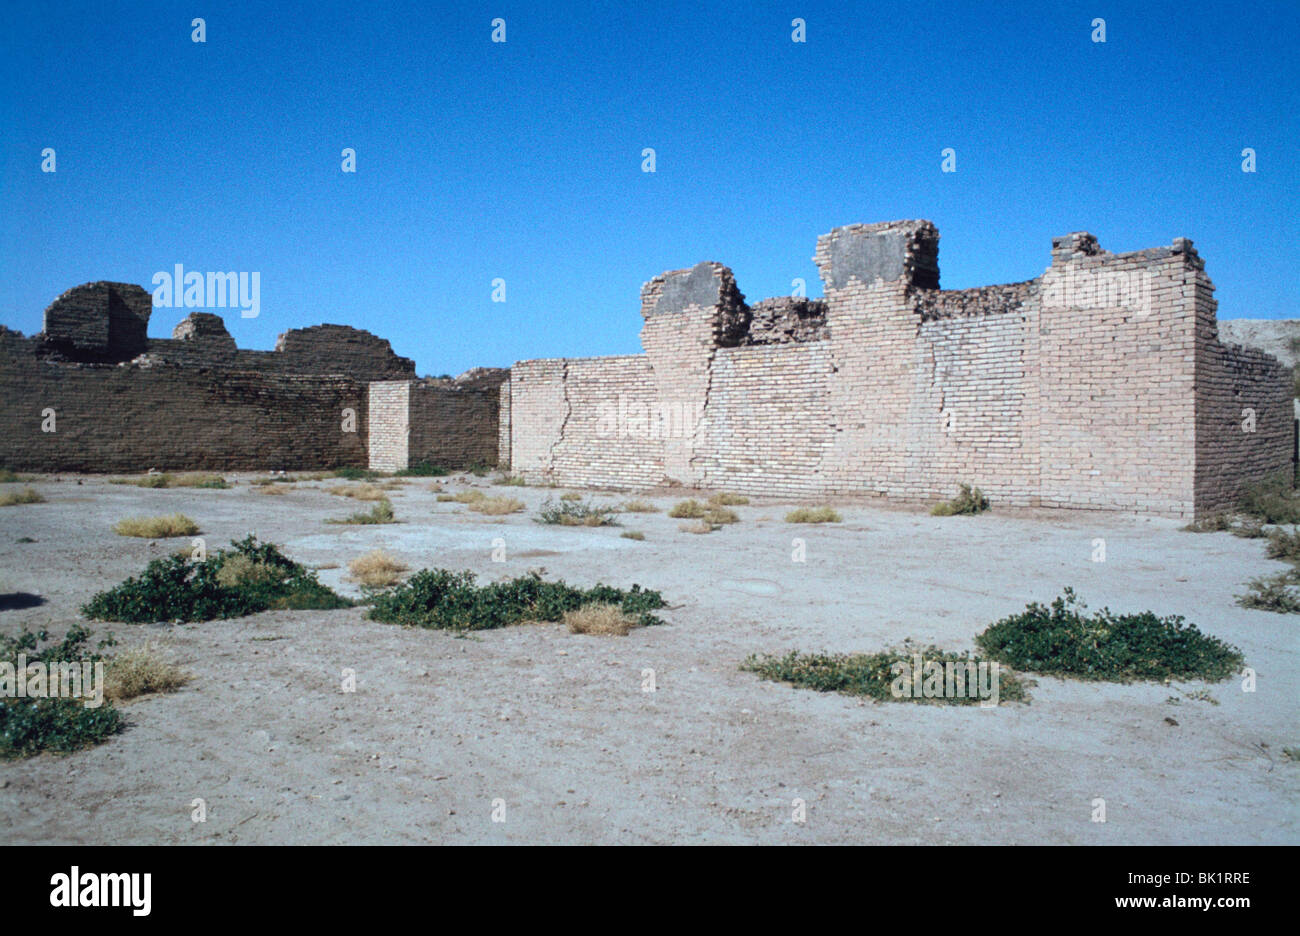 Salle du trône, le palais de Nabuchodonosor II, Babylone, l'Iraq. Banque D'Images